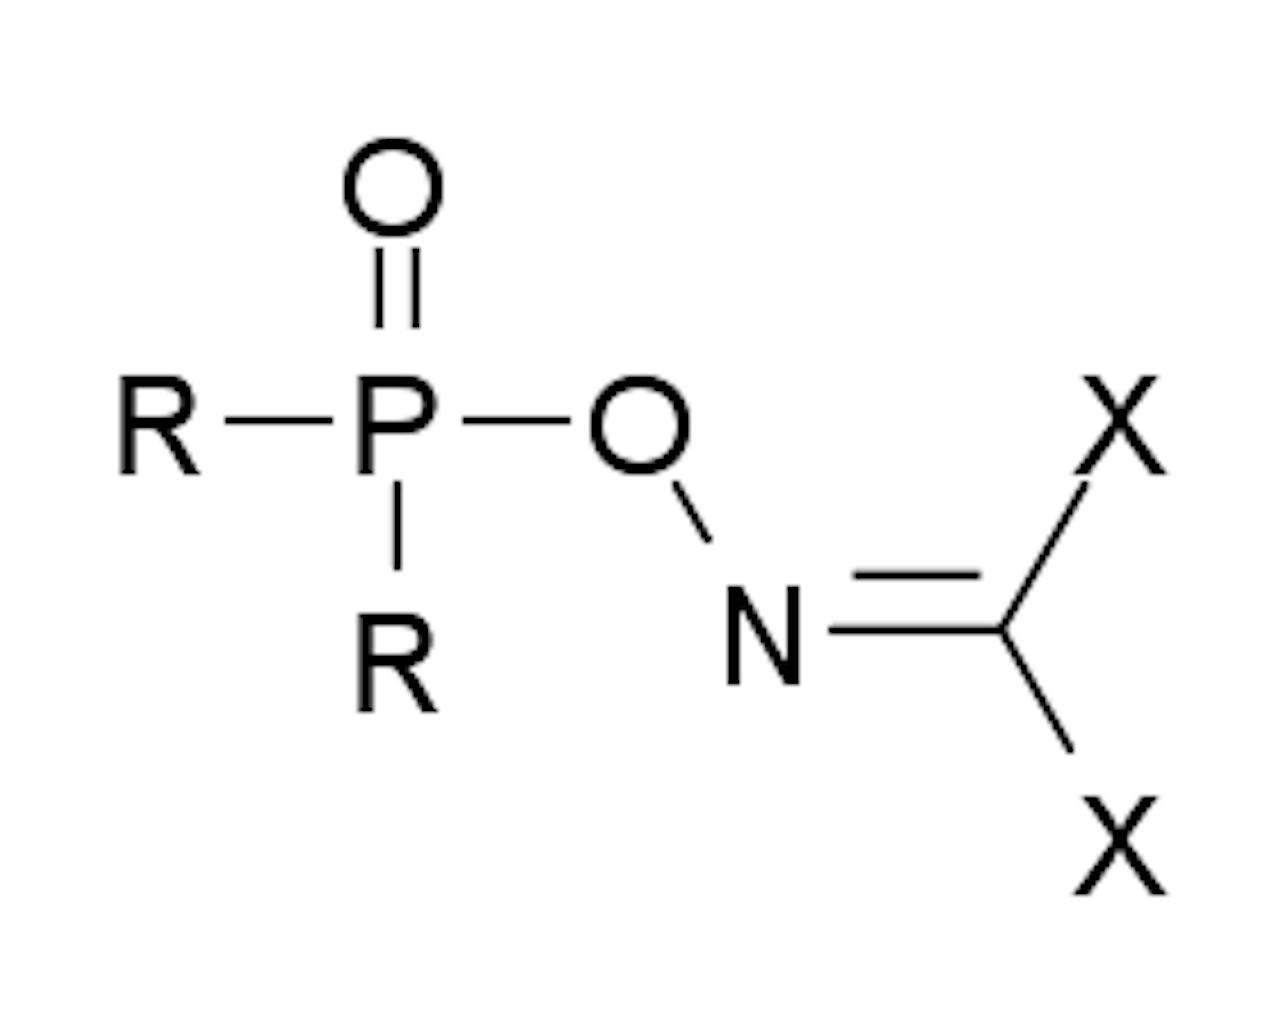 De scheikundige samenstelling van het zenuwgas Novichok. De varianten van dit zenuwgas bestaan uit fosfor (P), zuurstof (O) en stikstof (N).